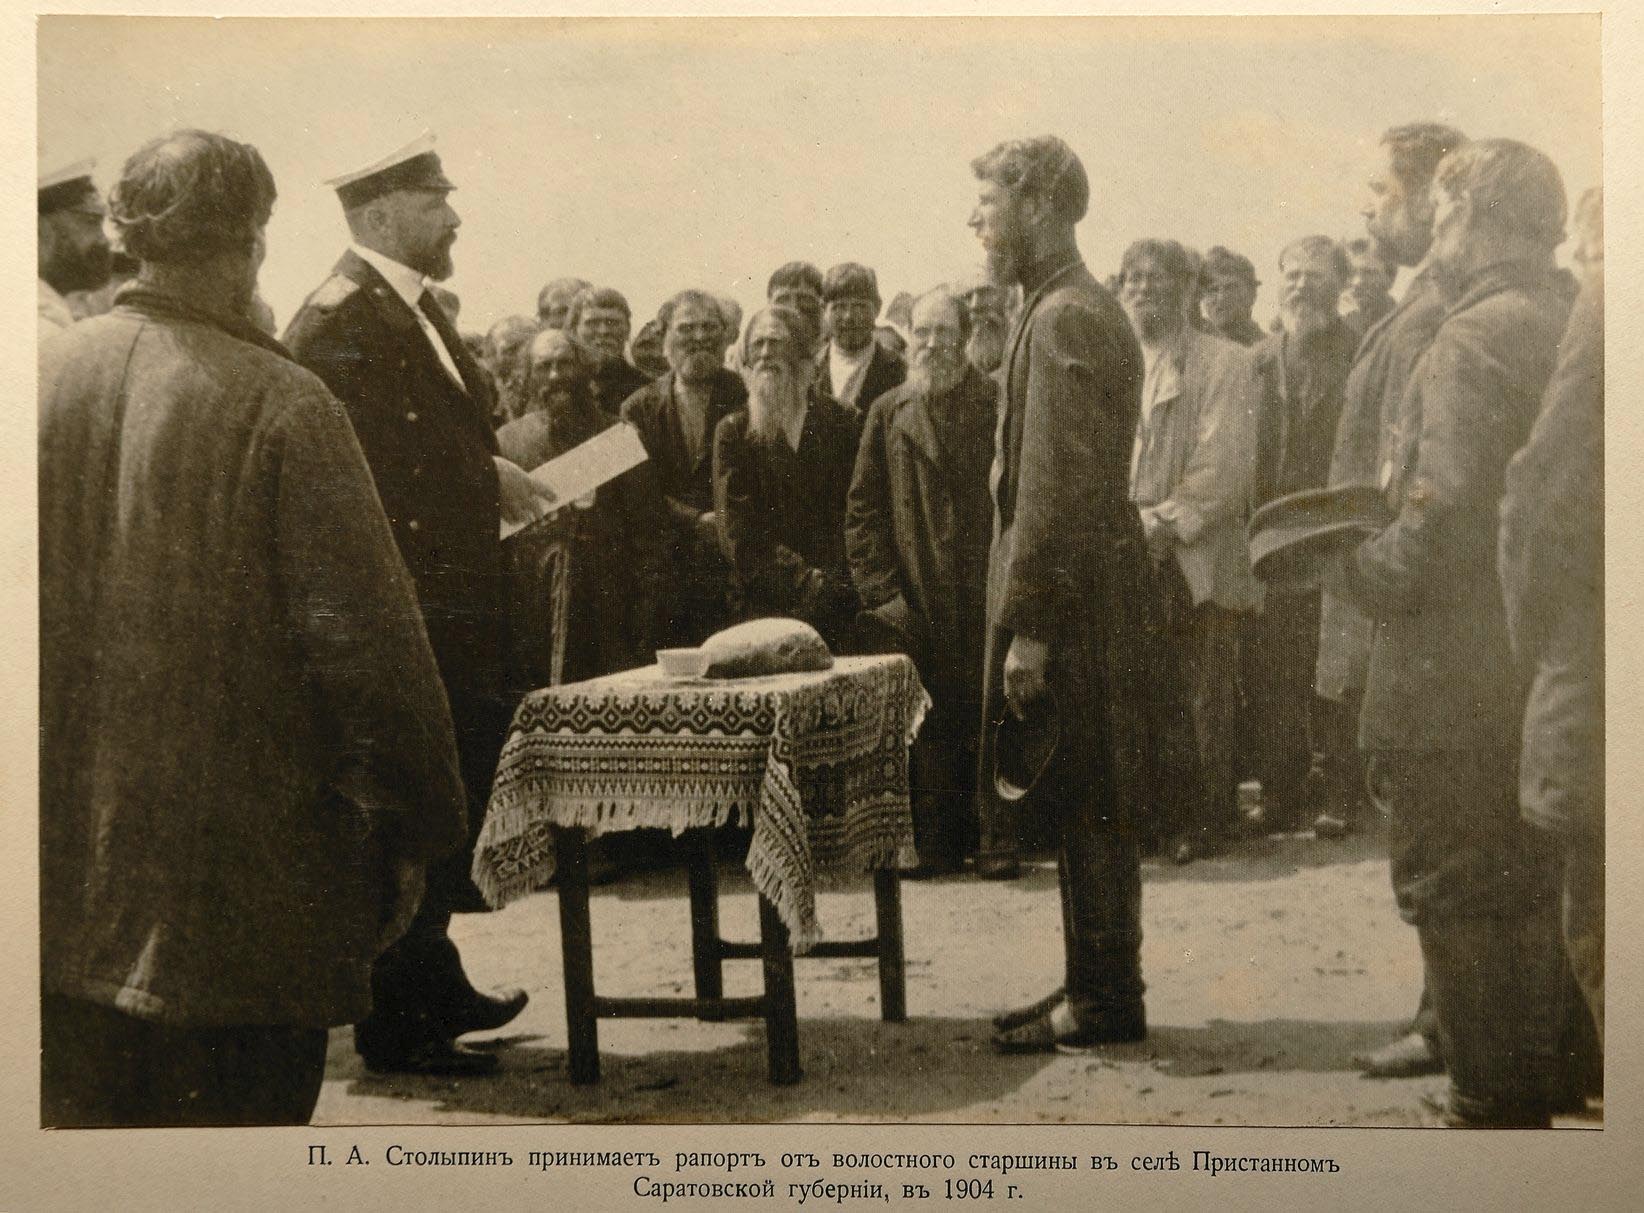 П. А. Столыпин принимает рапорт от волостного старшины в селе Пристанном Саратовской губернии в 1904 году